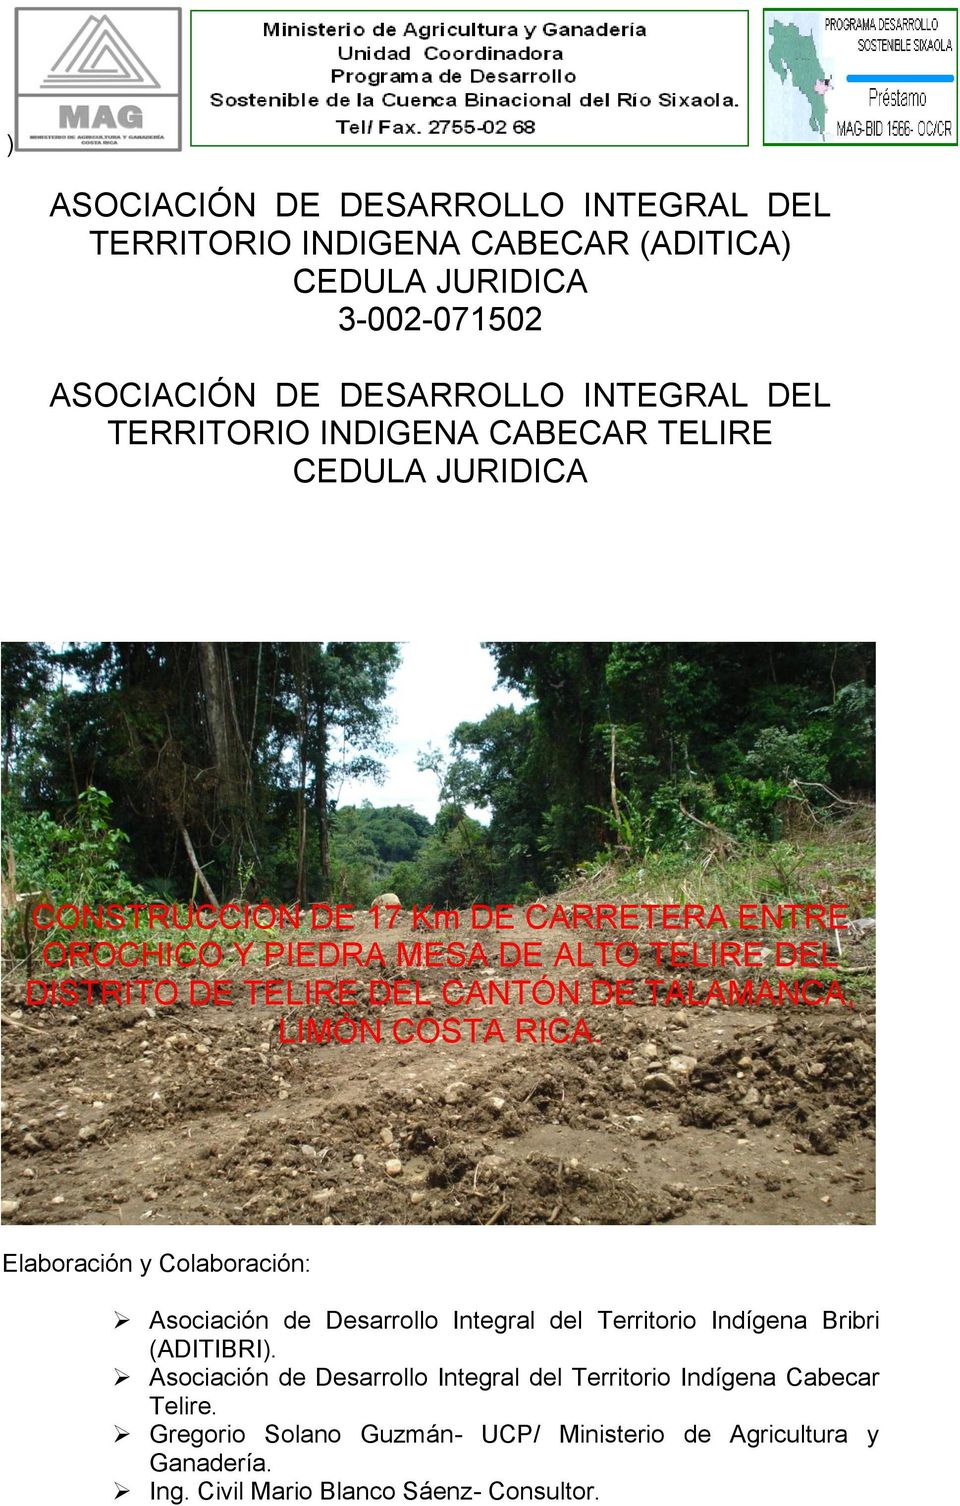 TALAMANCA, LIMÓN COSTA RICA. Elaboración y Colaboración: Asociación de Desarrollo Integral del Territorio Indígena Bribri (ADITIBRI).